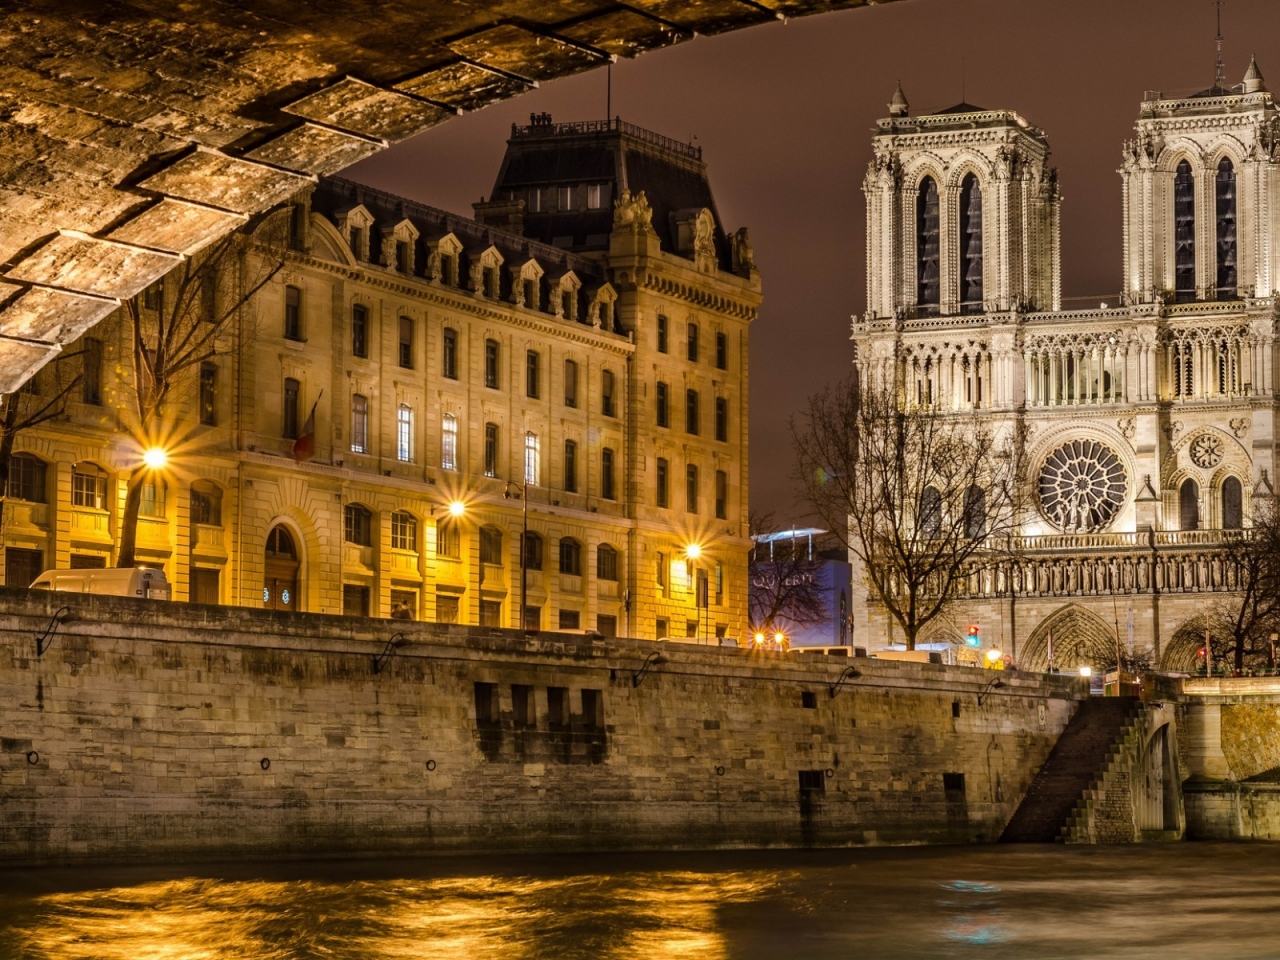 Notre Dame de Paris Front View for 1280 x 960 resolution